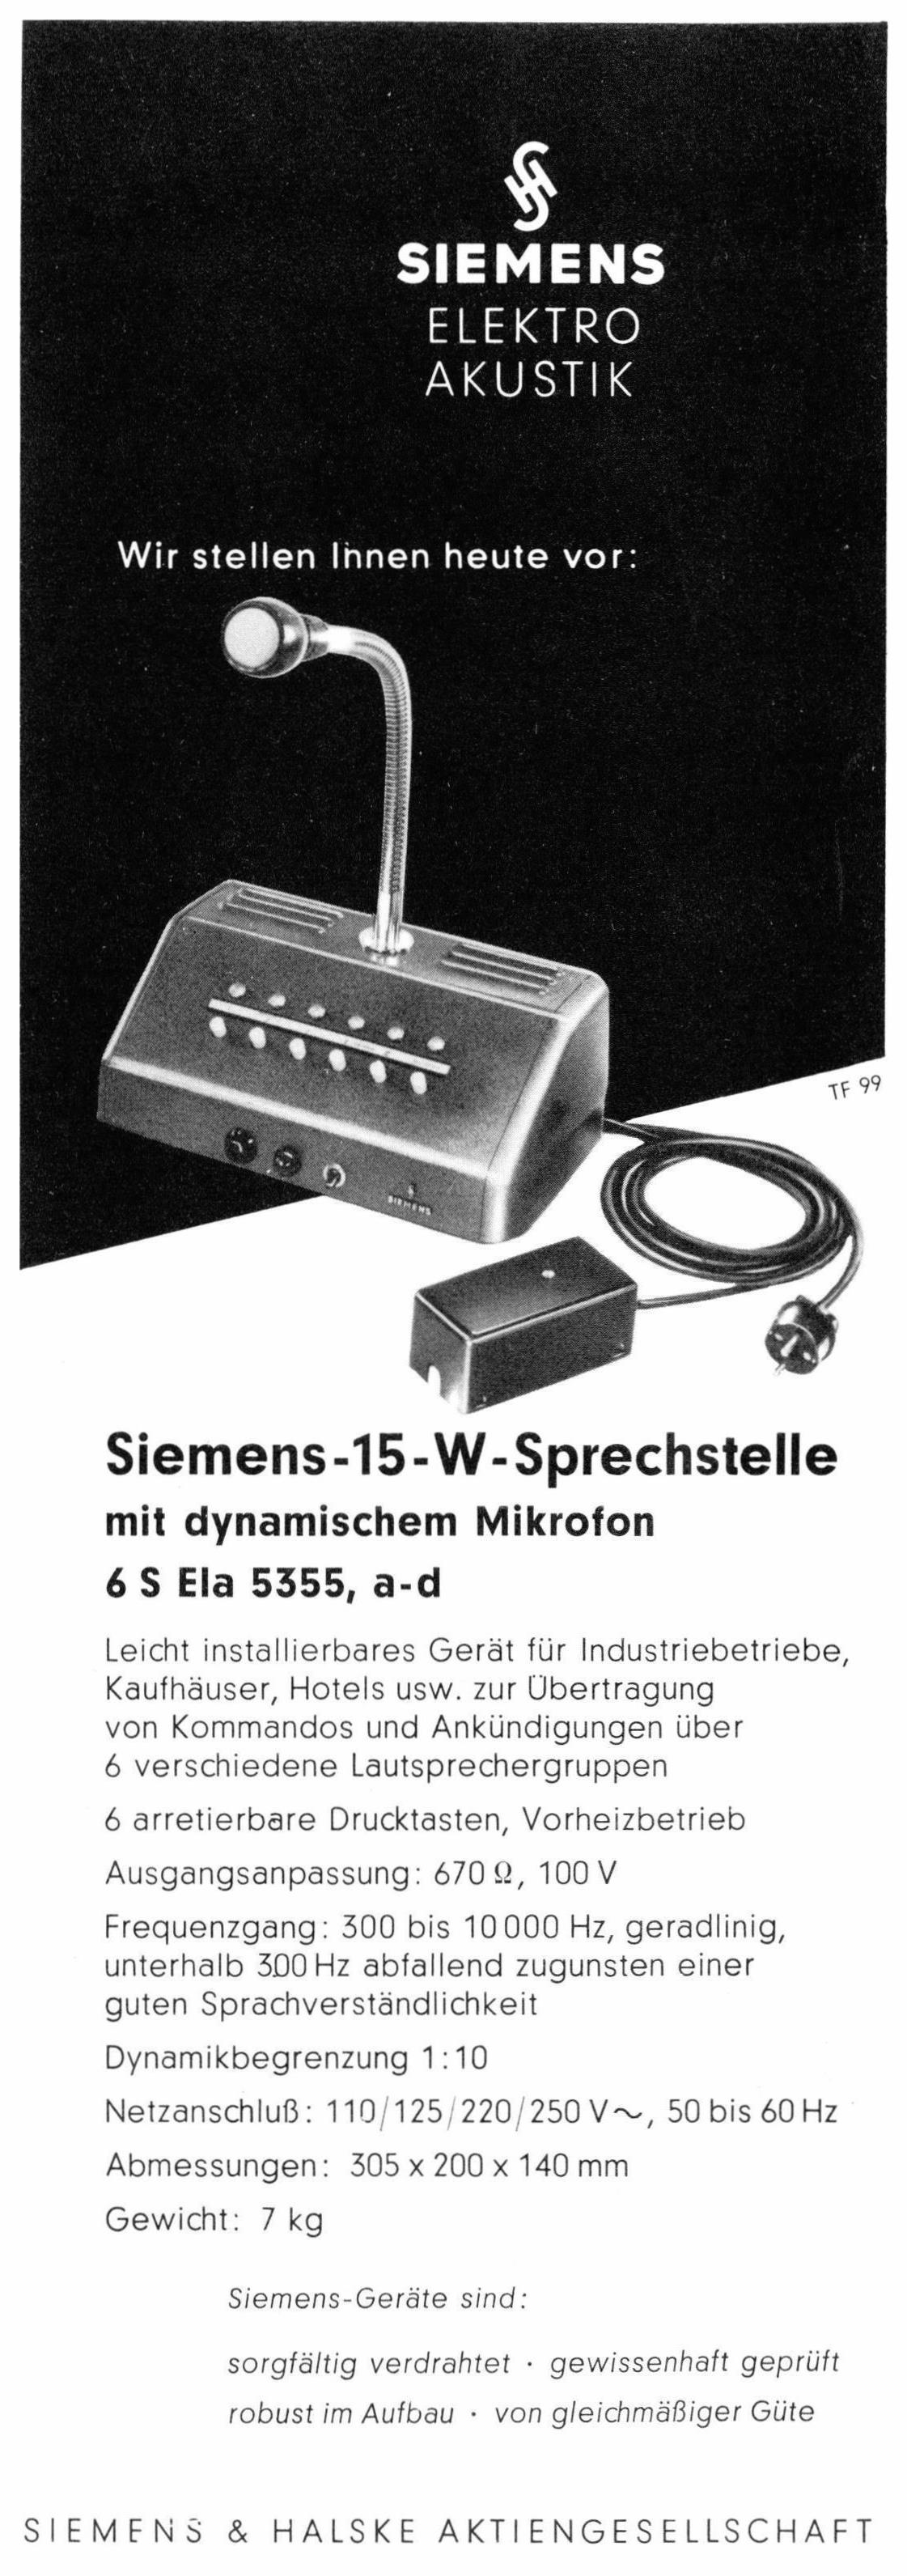 Siemens 1957 0.jpg